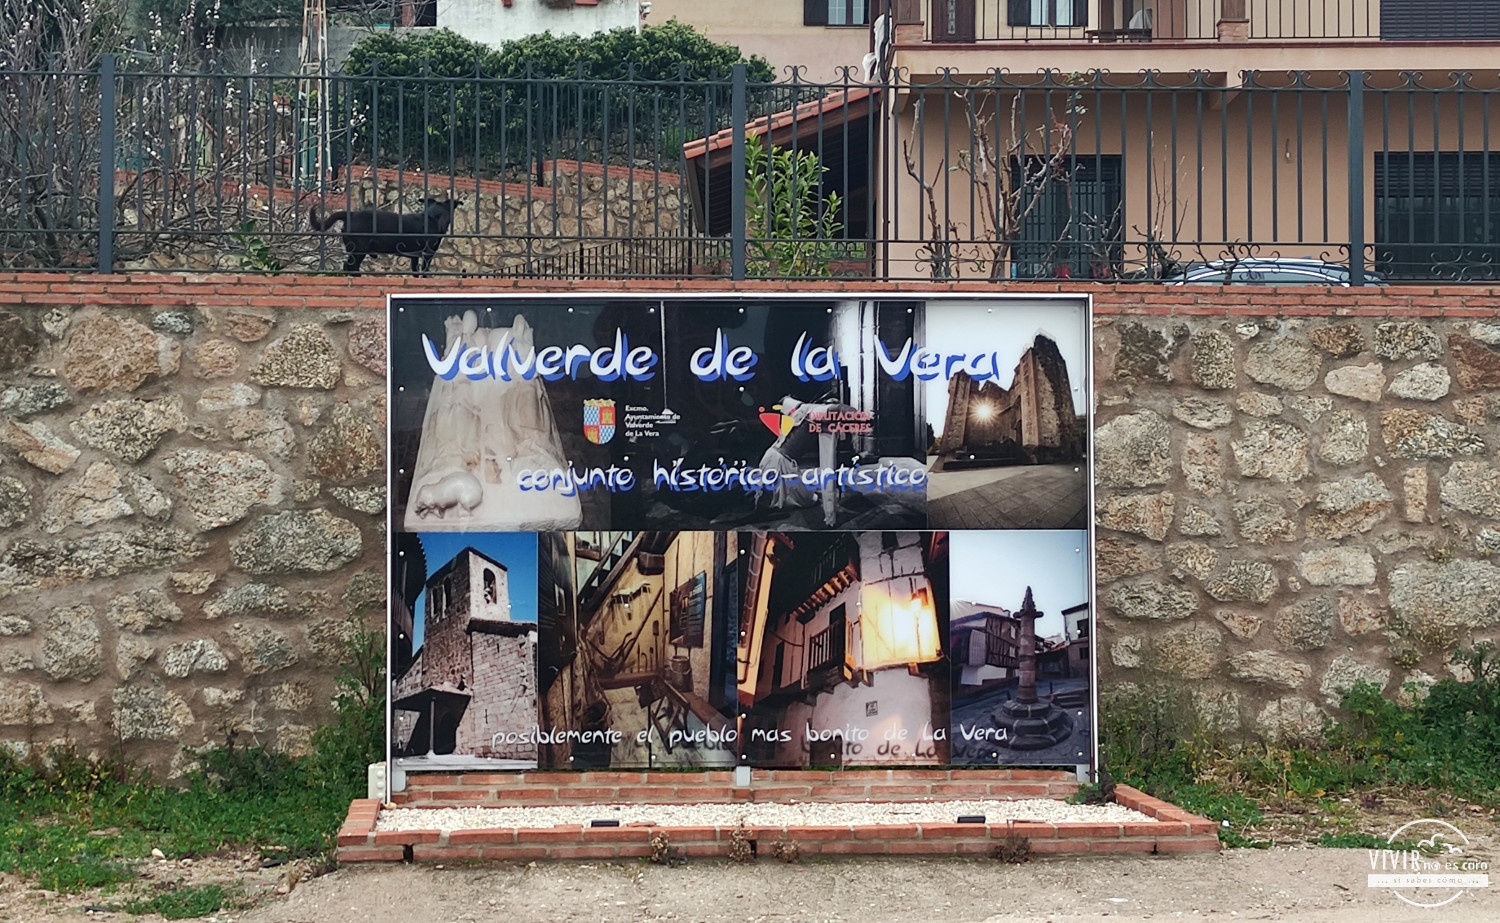 Cartel Valverde de la Vera, Conjunto Histórico Artístico (Cáceres)